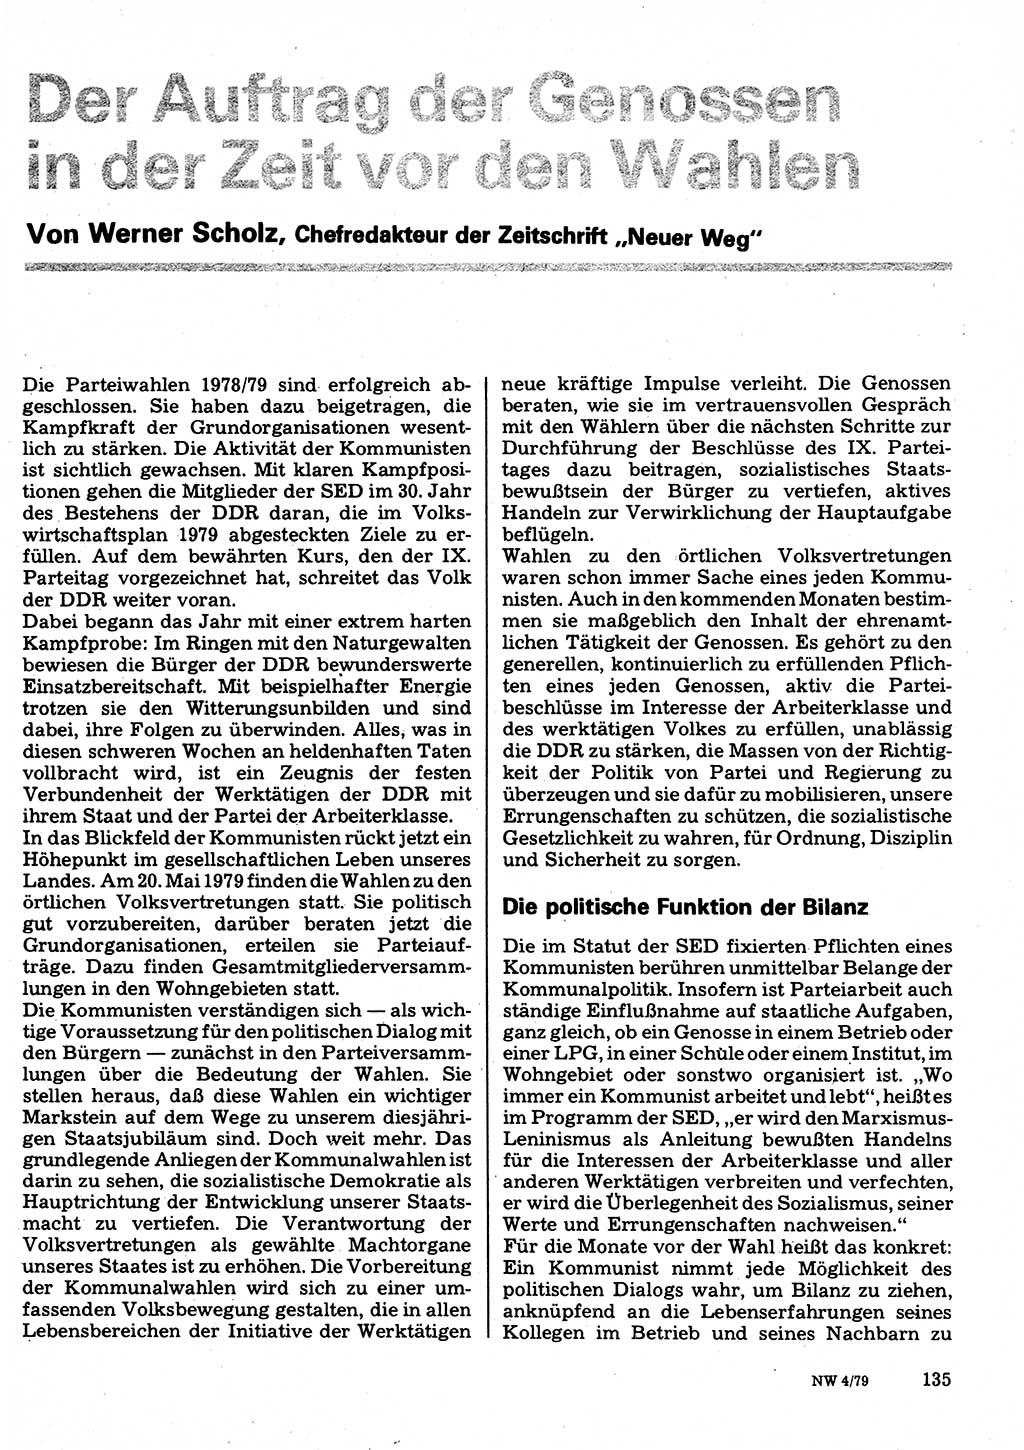 Neuer Weg (NW), Organ des Zentralkomitees (ZK) der SED (Sozialistische Einheitspartei Deutschlands) für Fragen des Parteilebens, 34. Jahrgang [Deutsche Demokratische Republik (DDR)] 1979, Seite 135 (NW ZK SED DDR 1979, S. 135)